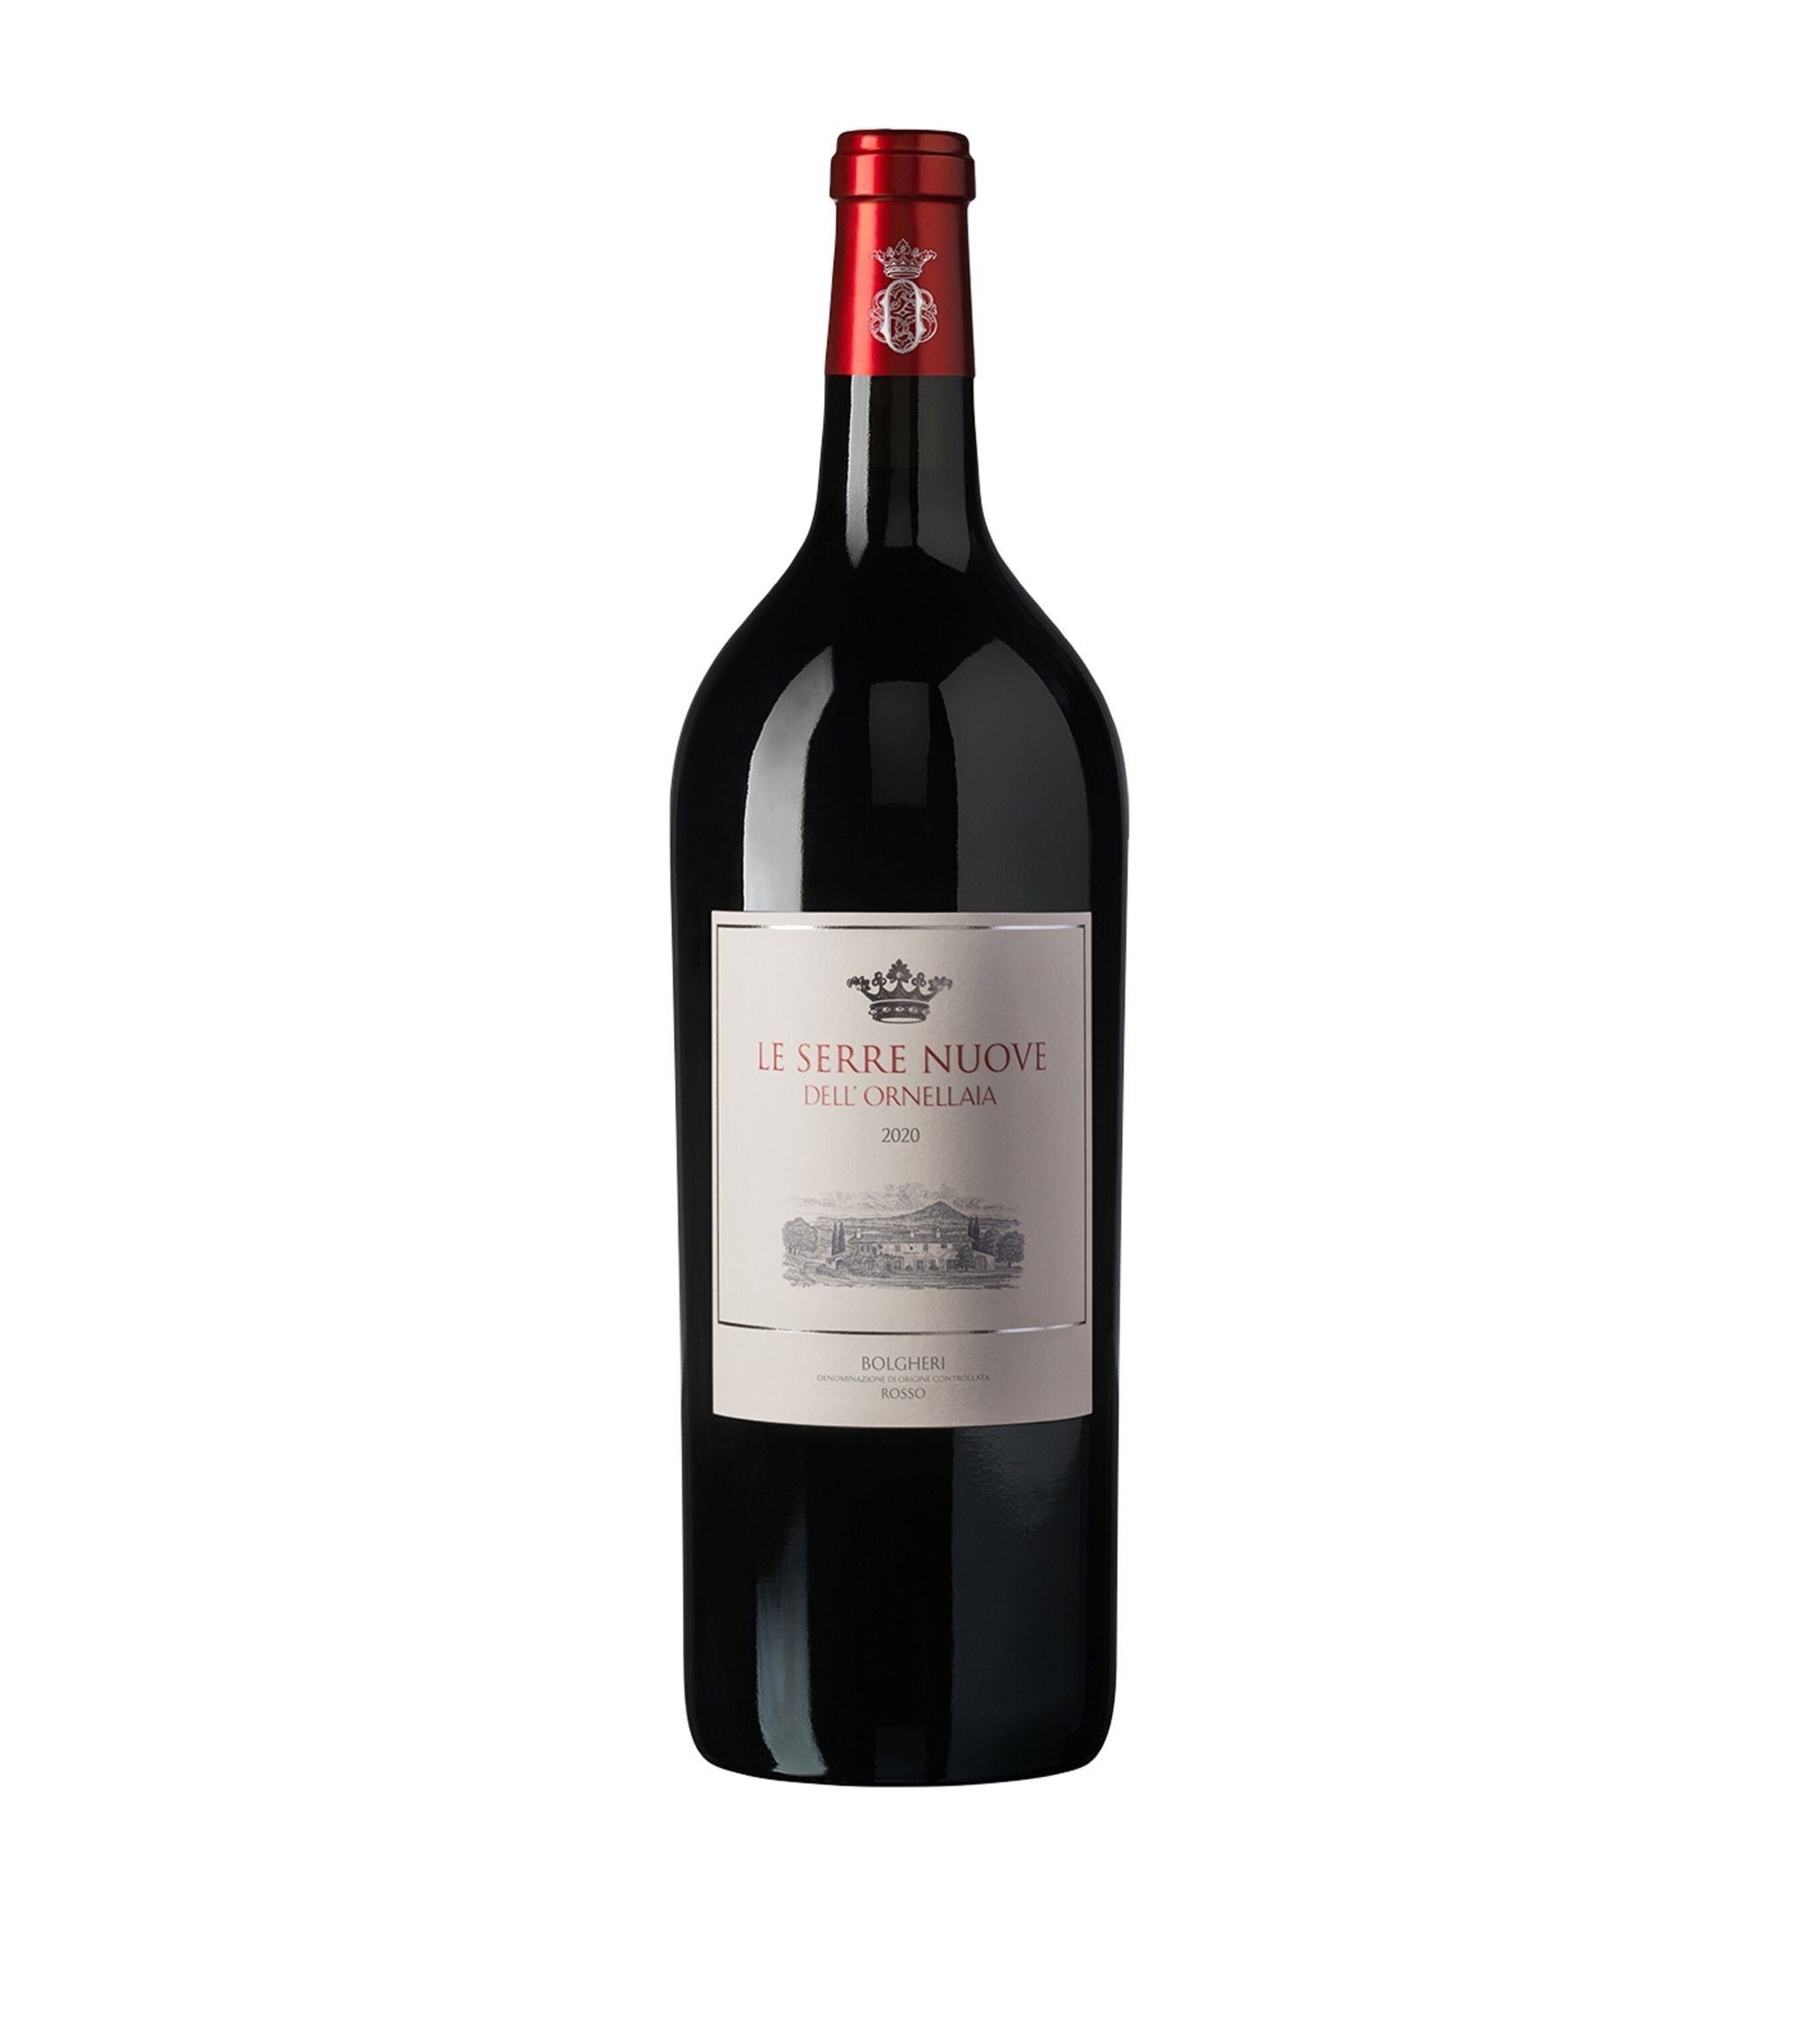 Le Serre Nuove dell'Ornellaia 2020 Magnum (1.5L) - Tuscany, Italy Wine & Champagne Harrods   